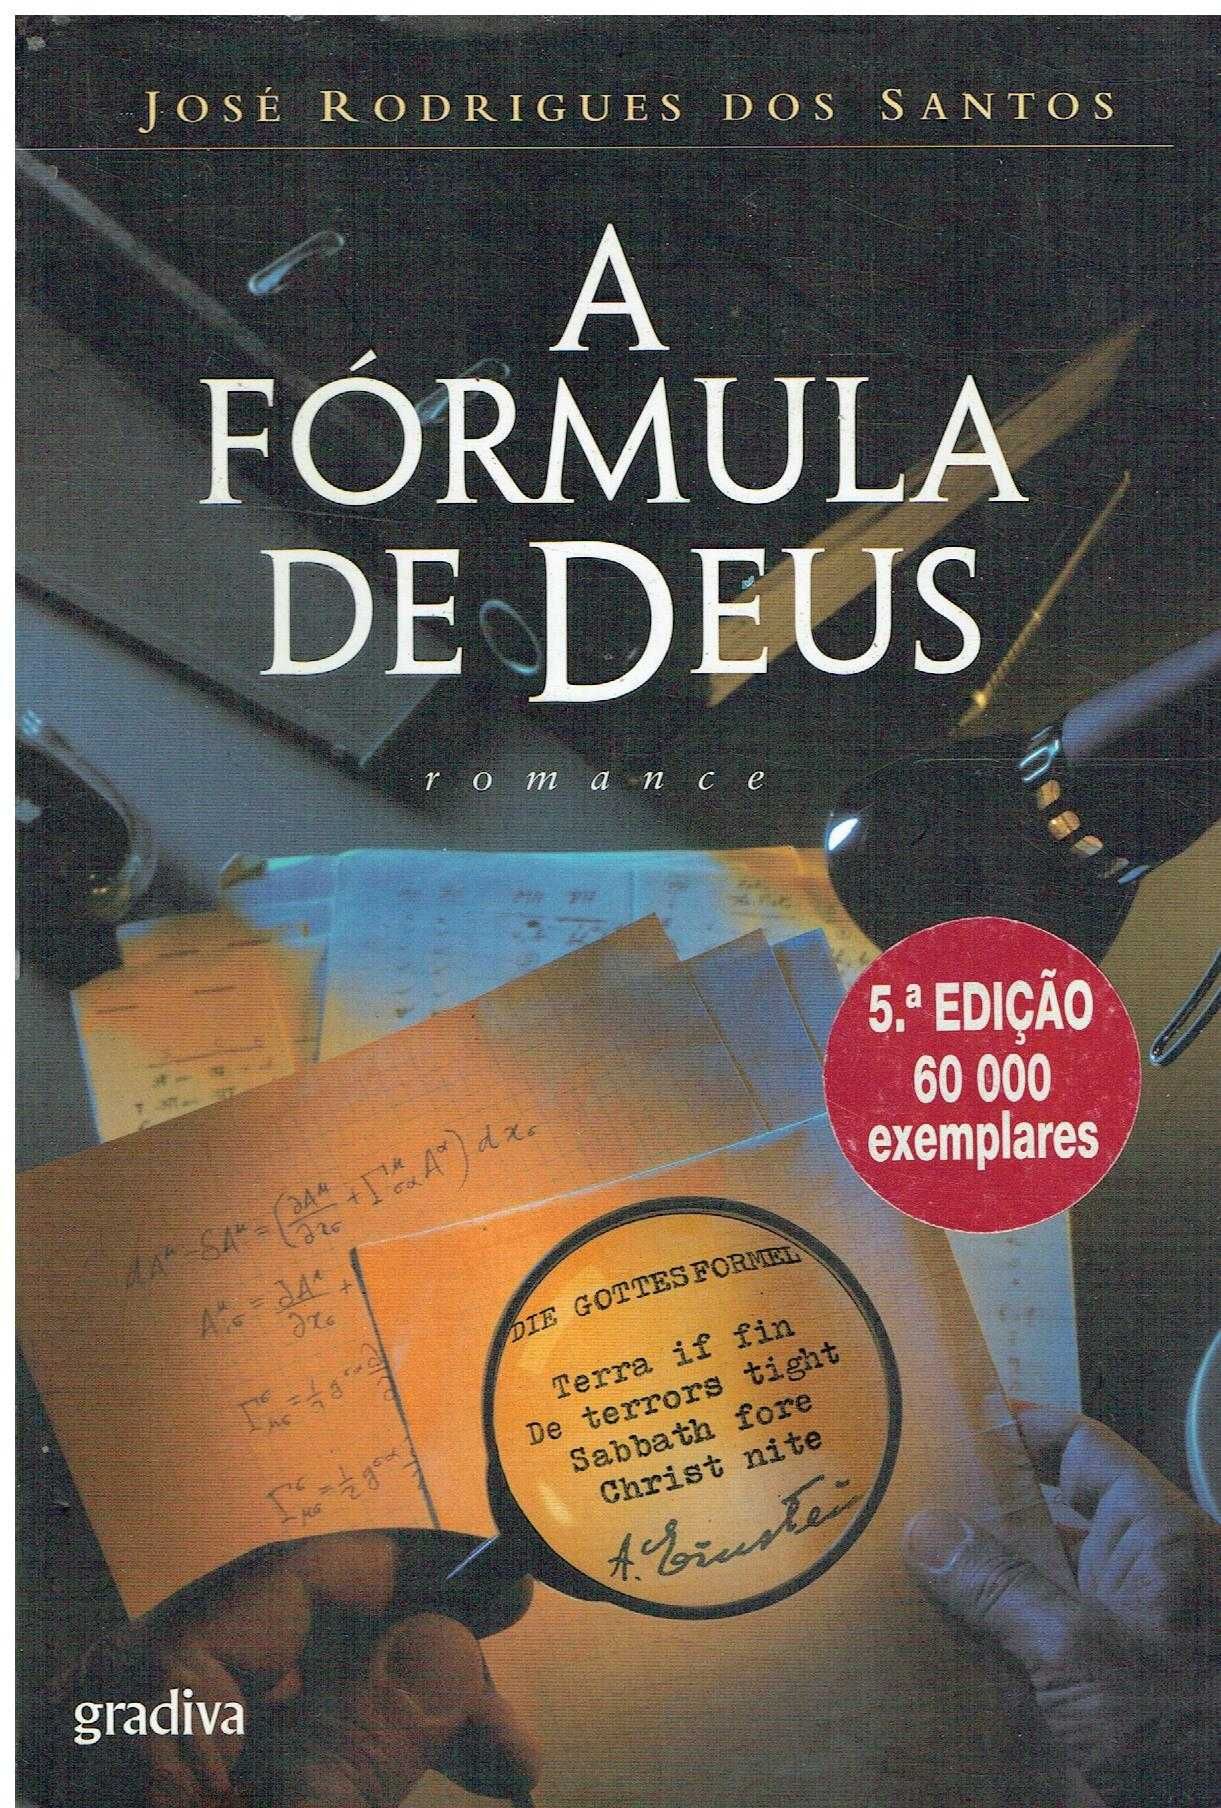 6168

A Fórmula de Deus
de José Rodrigues dos Santos